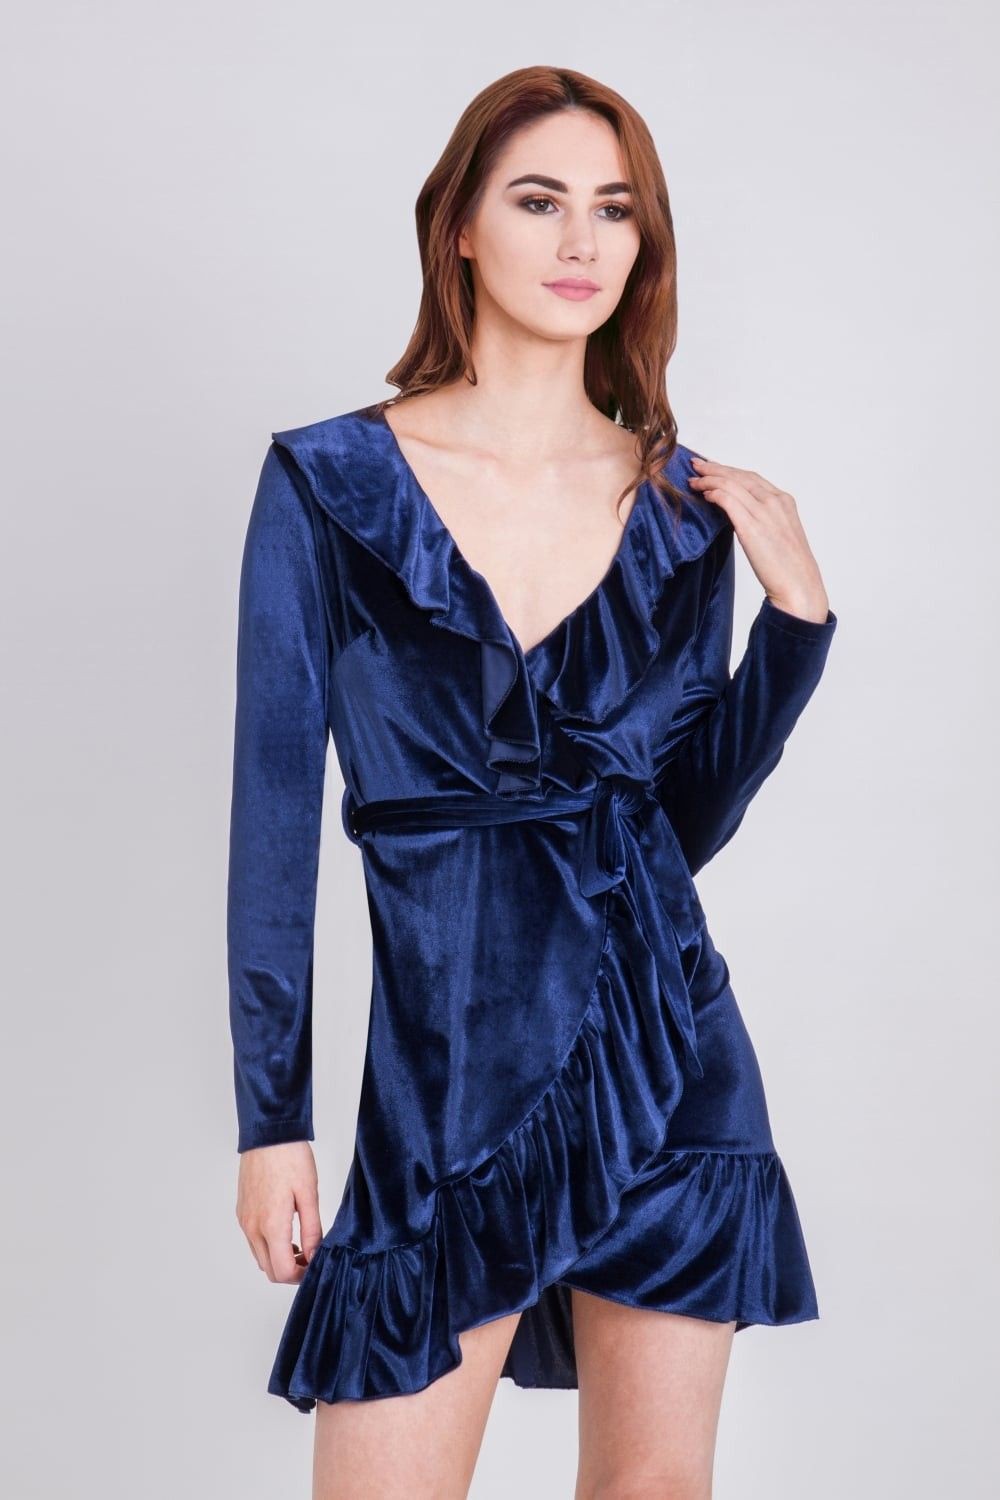 Gran sugerencia relacionada con modelo de moda, vestido de cóctel.: vestidos de coctel,  Azul eléctrico,  Trajes De Terciopelo  